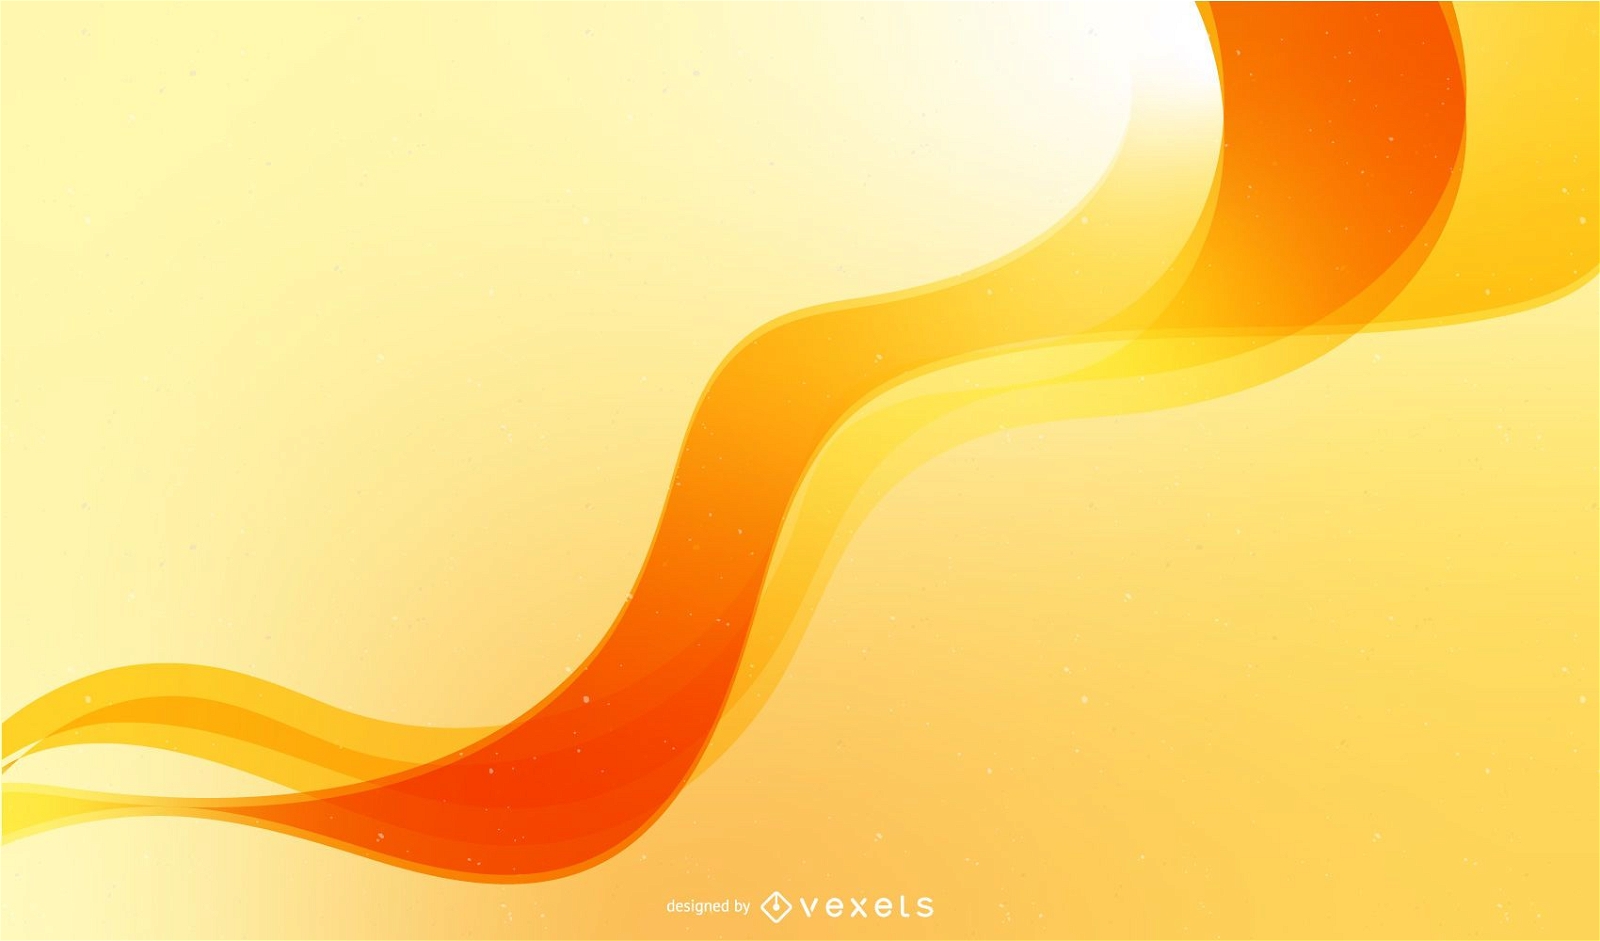 Diseño de fondo abstracto con onda naranja